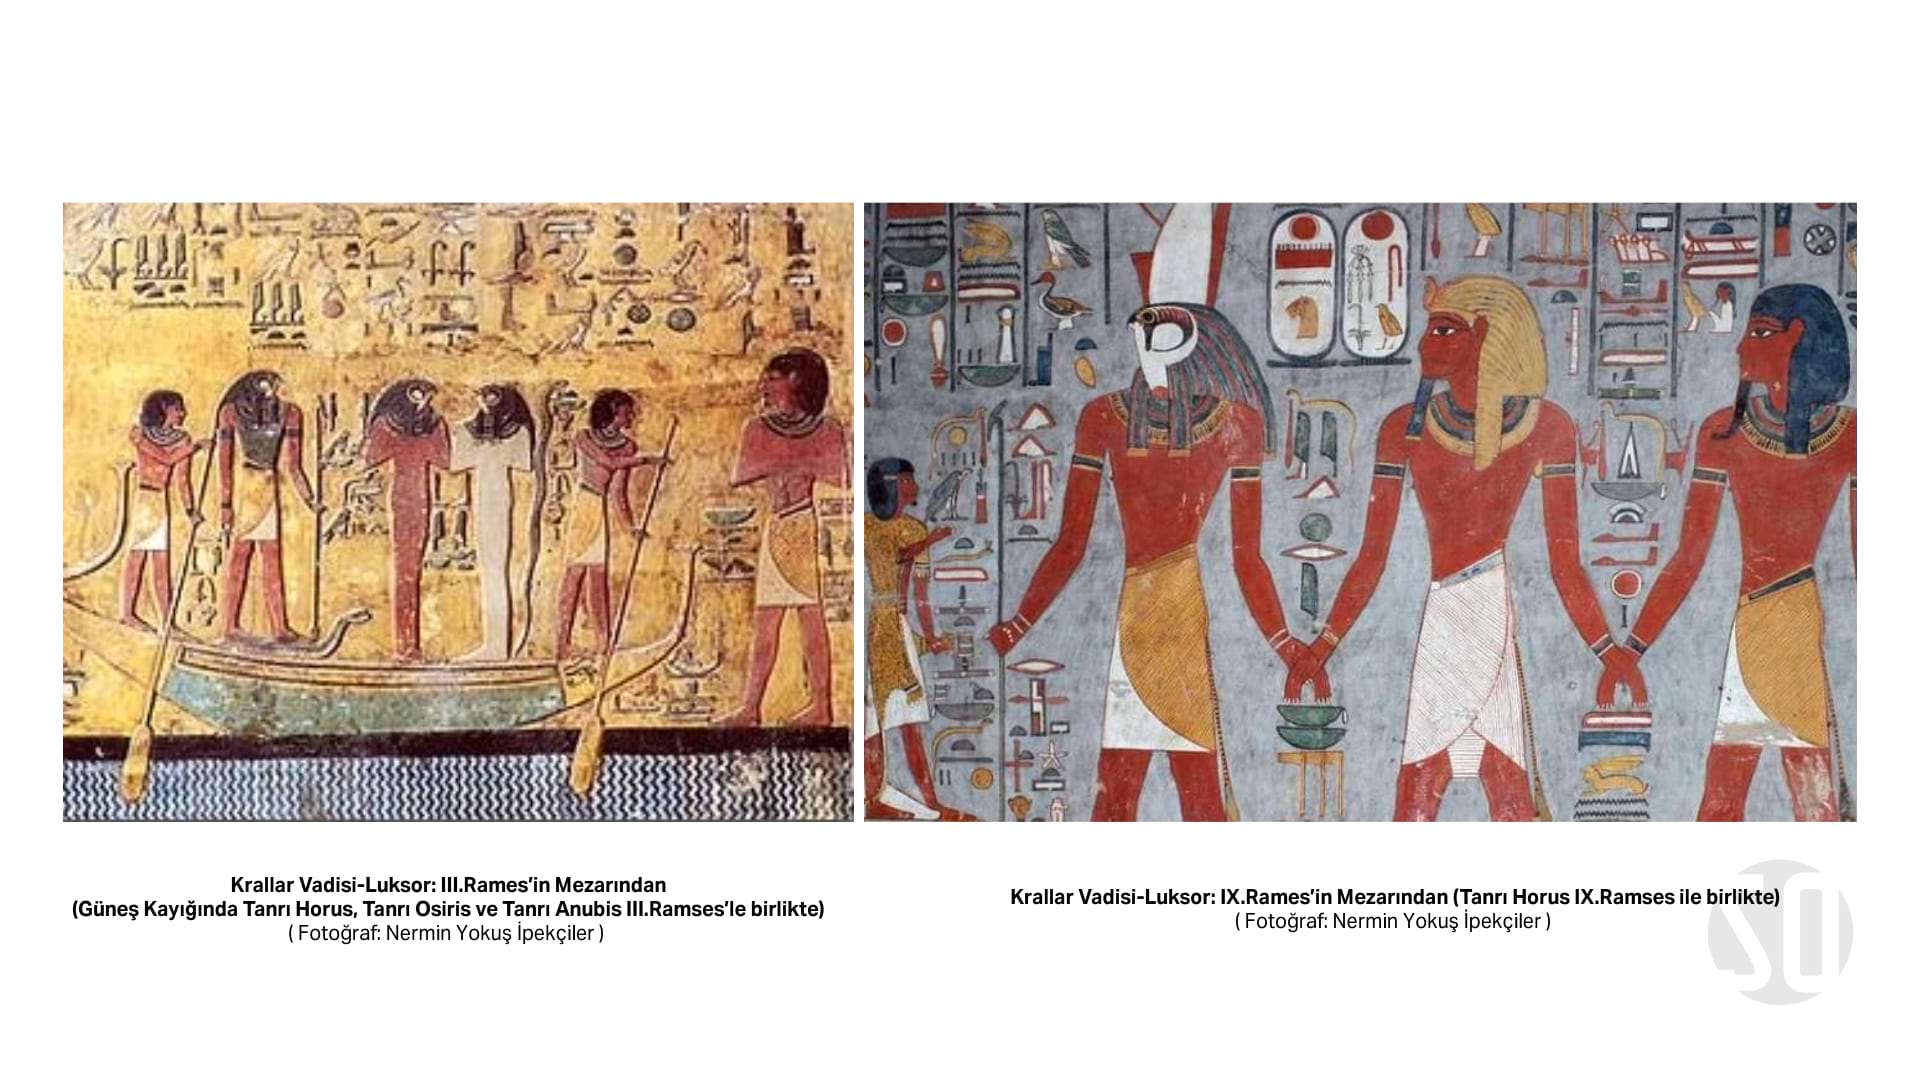 Krallar Vadisi-Luksor: III.Rames’in Mezarından